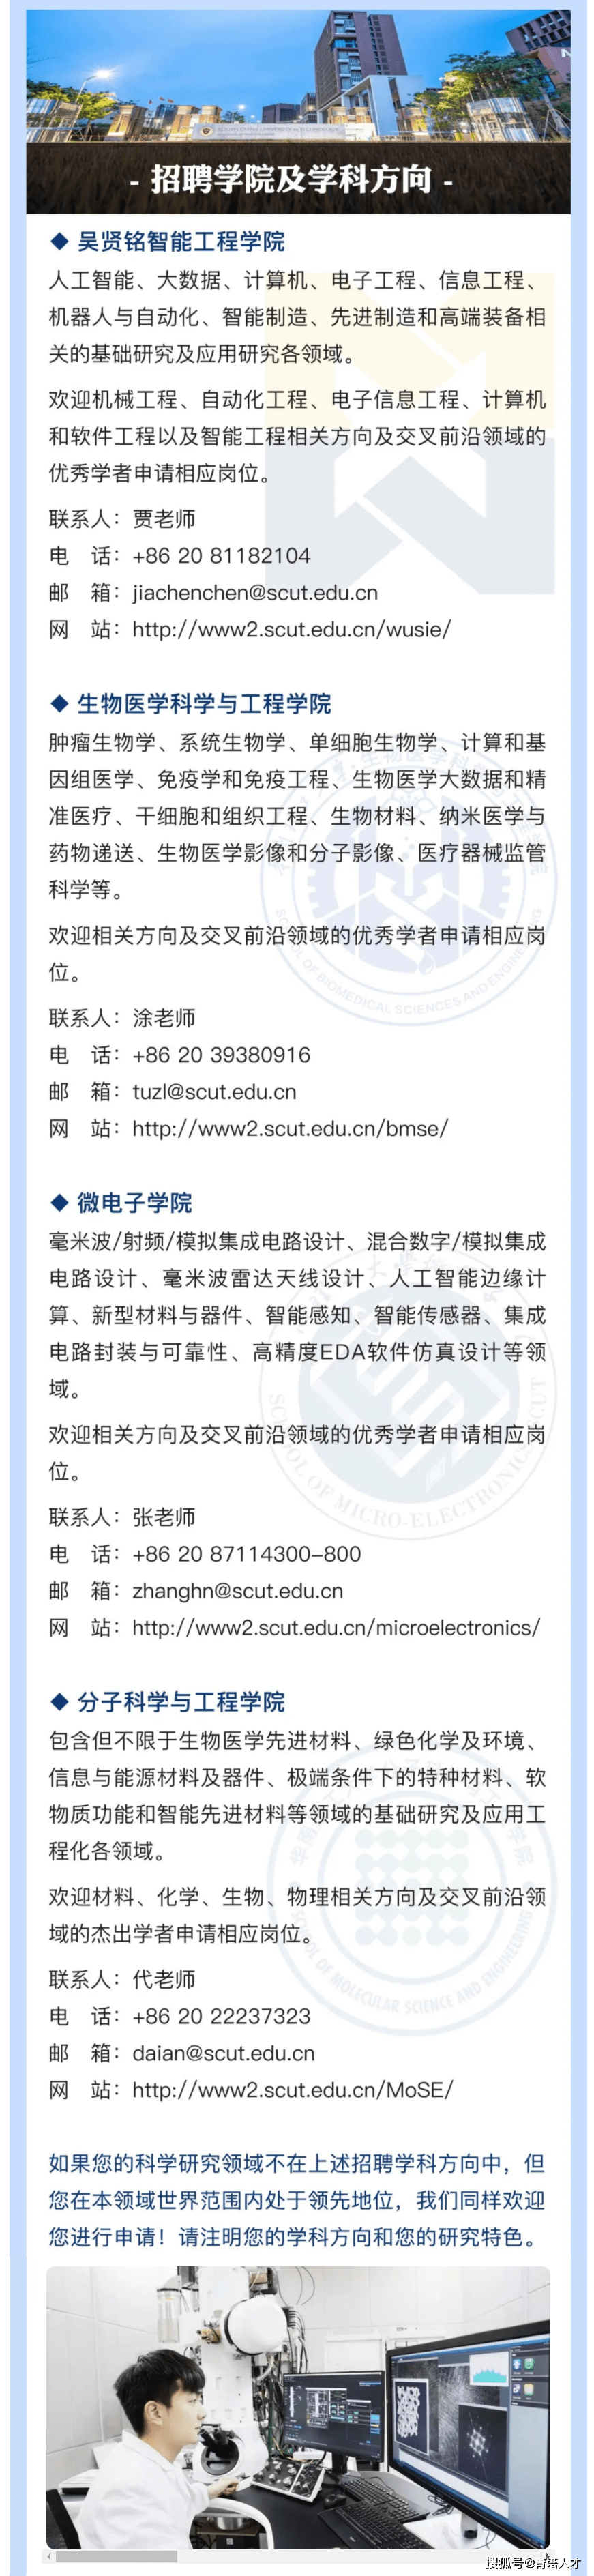 华南理工大学2021海内外高端人才招聘